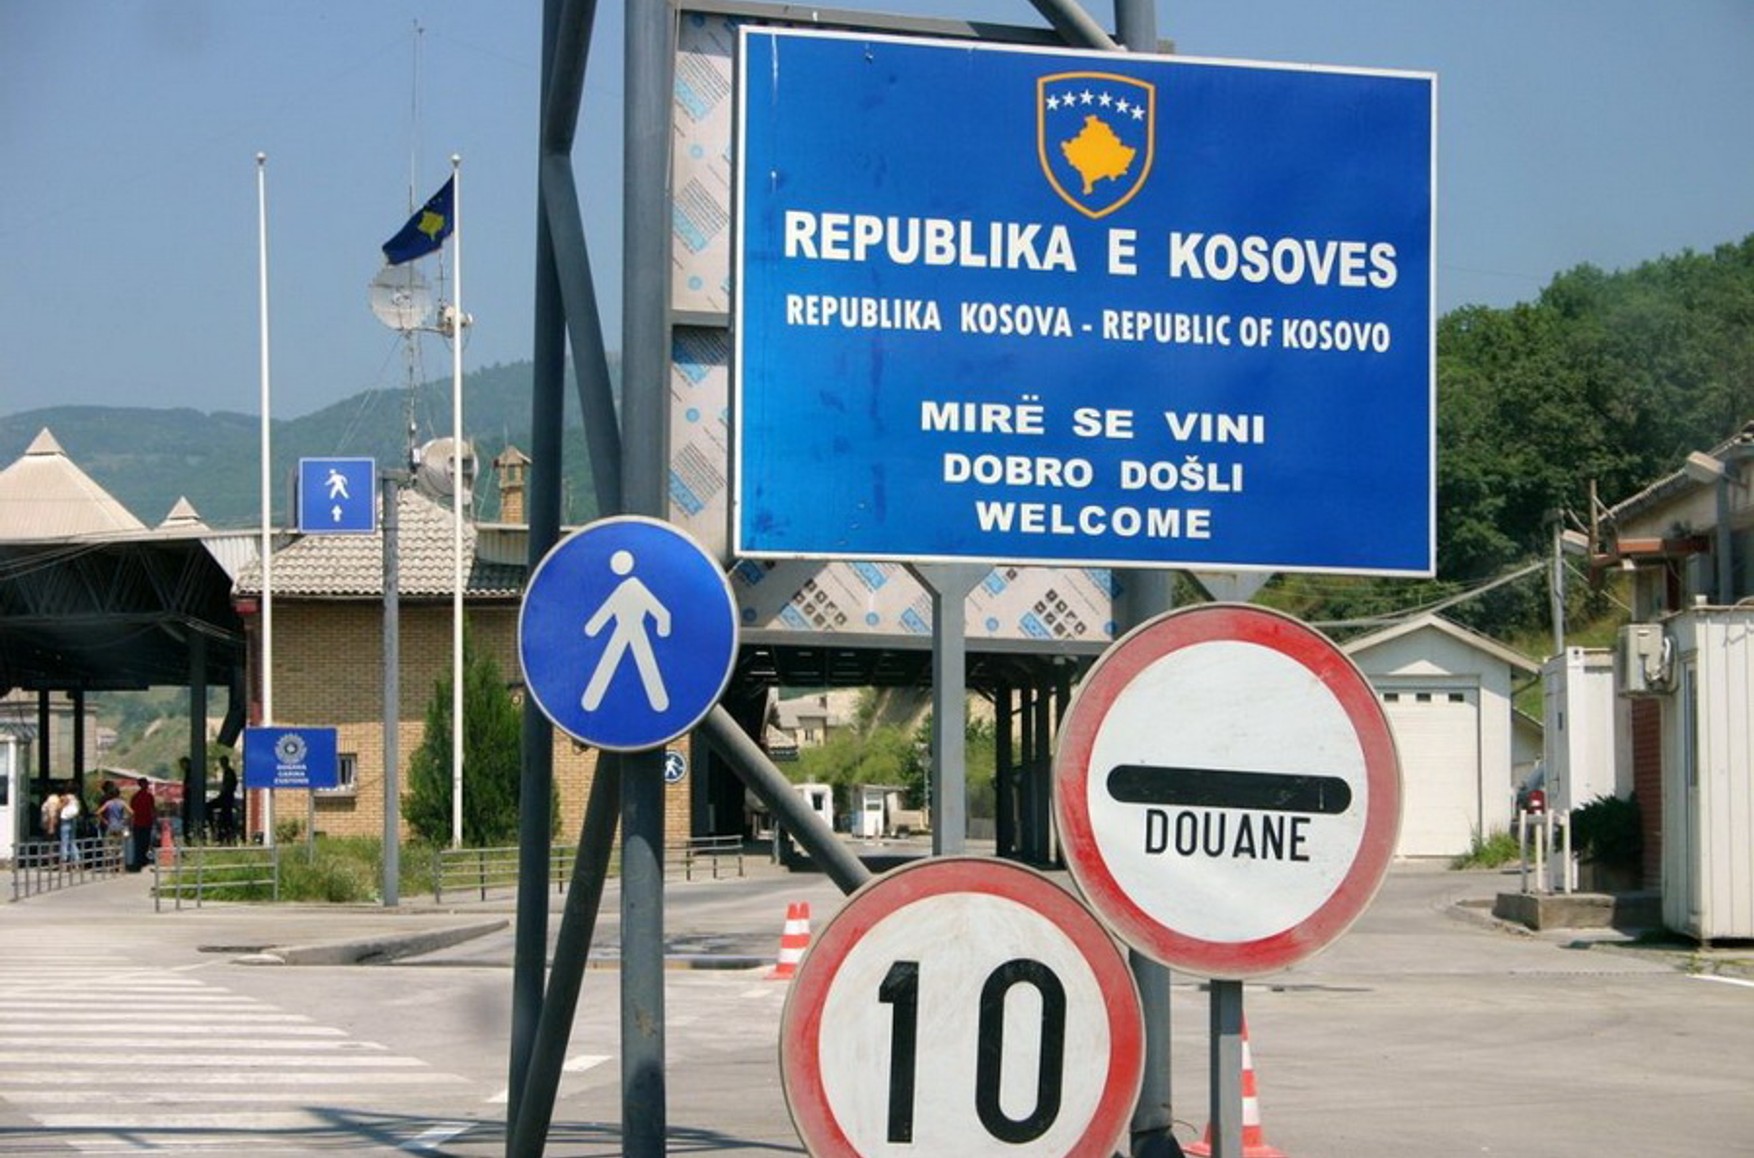 СМИ сообщают о стрельбе и сиренах на границе Сербии и Косово. Вучич ранее заявлял, что Косово начнет силовую операцию против сербов